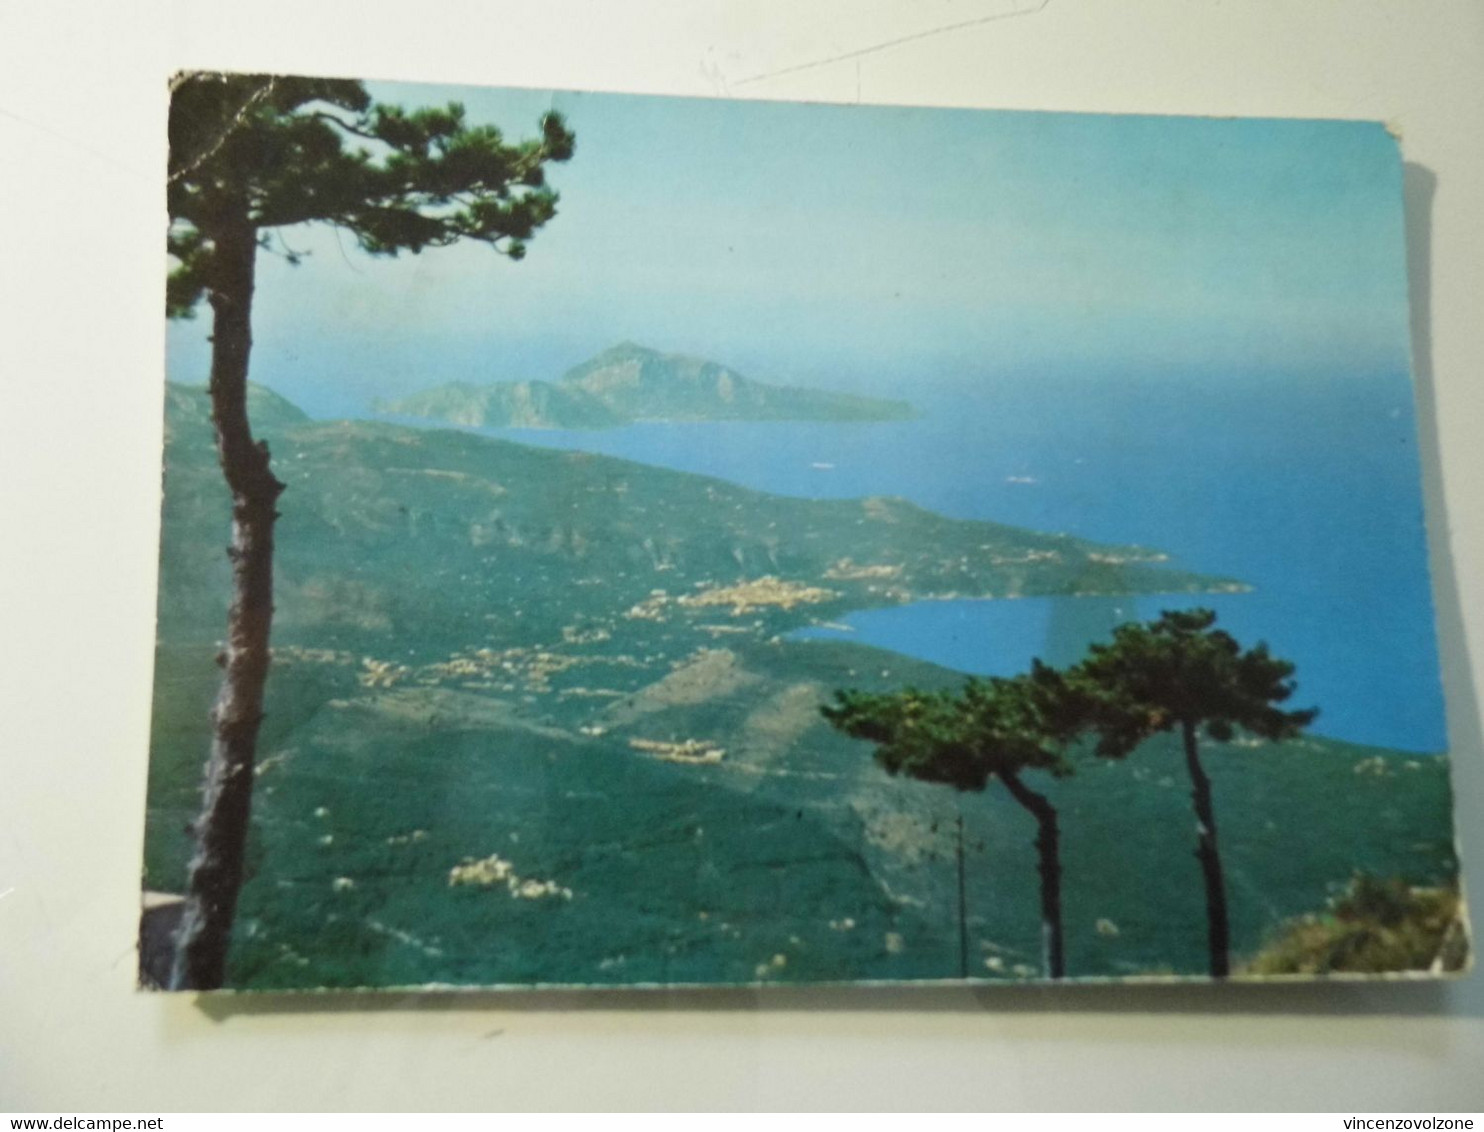 Cartolina Viaggiata "MONTE FAITO Panorama Con Veduta Della Penisola Sorrentina E Dell'Isola Di Capri" 1964 - Castellammare Di Stabia